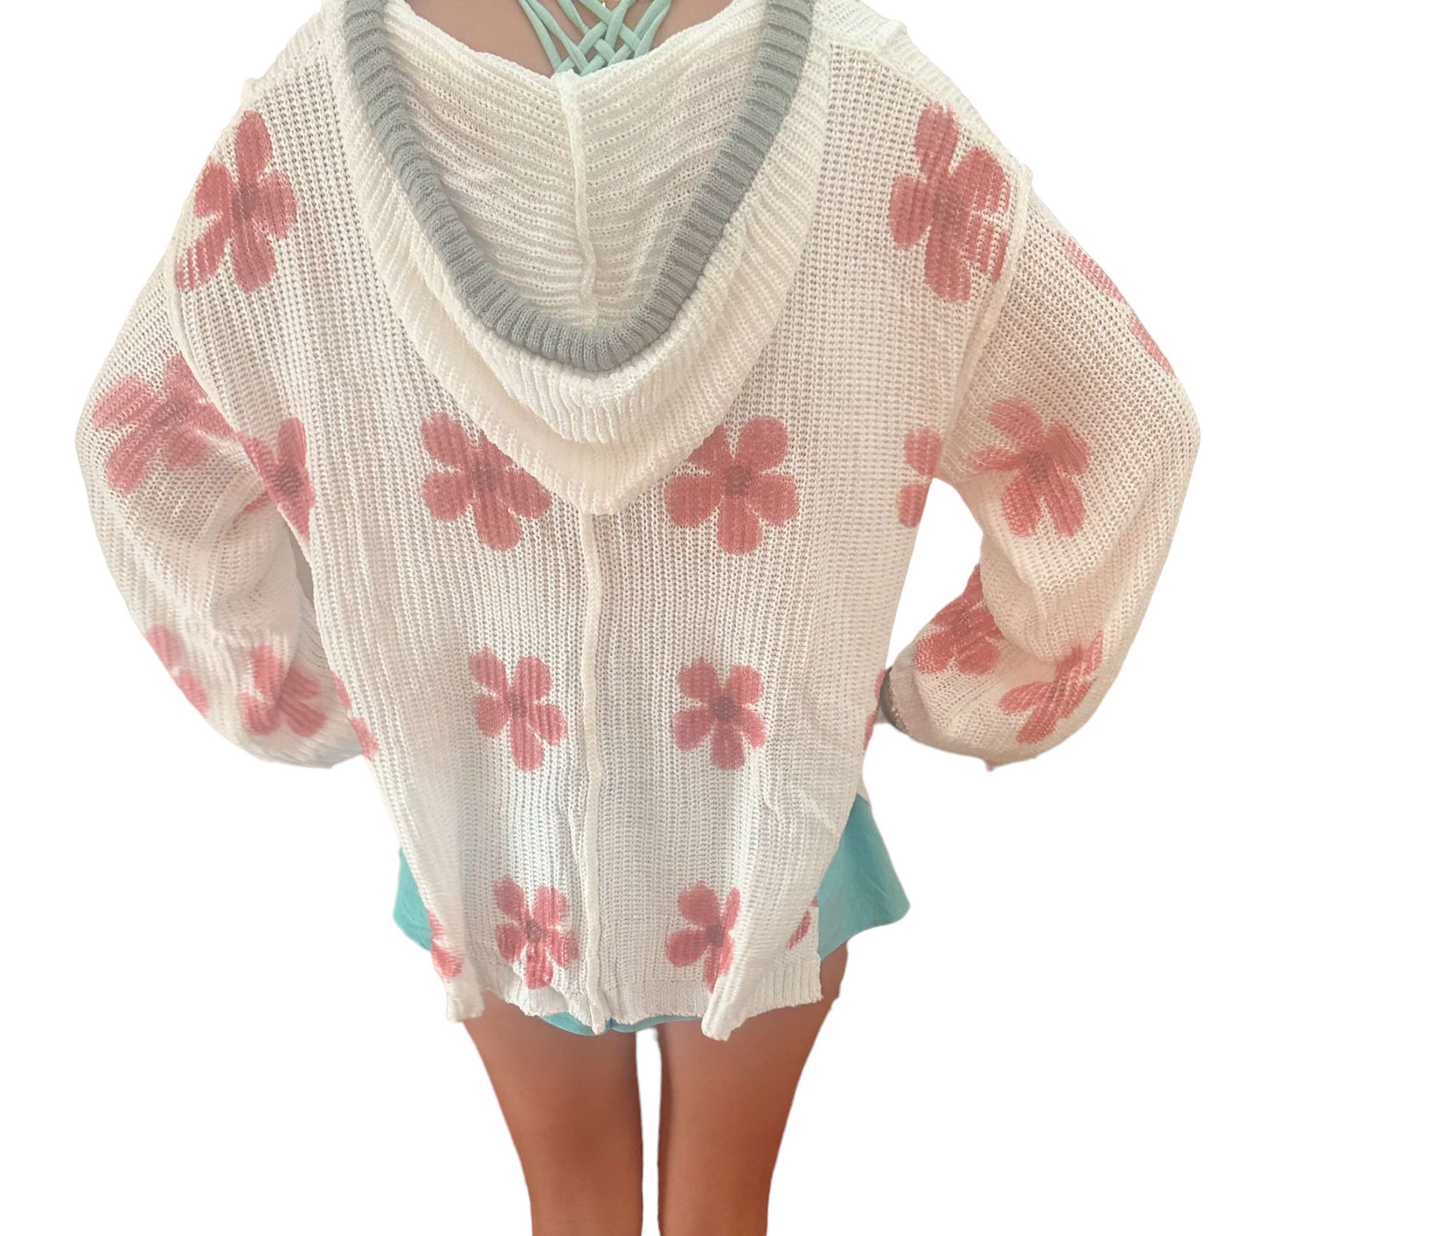 Daisy sweater